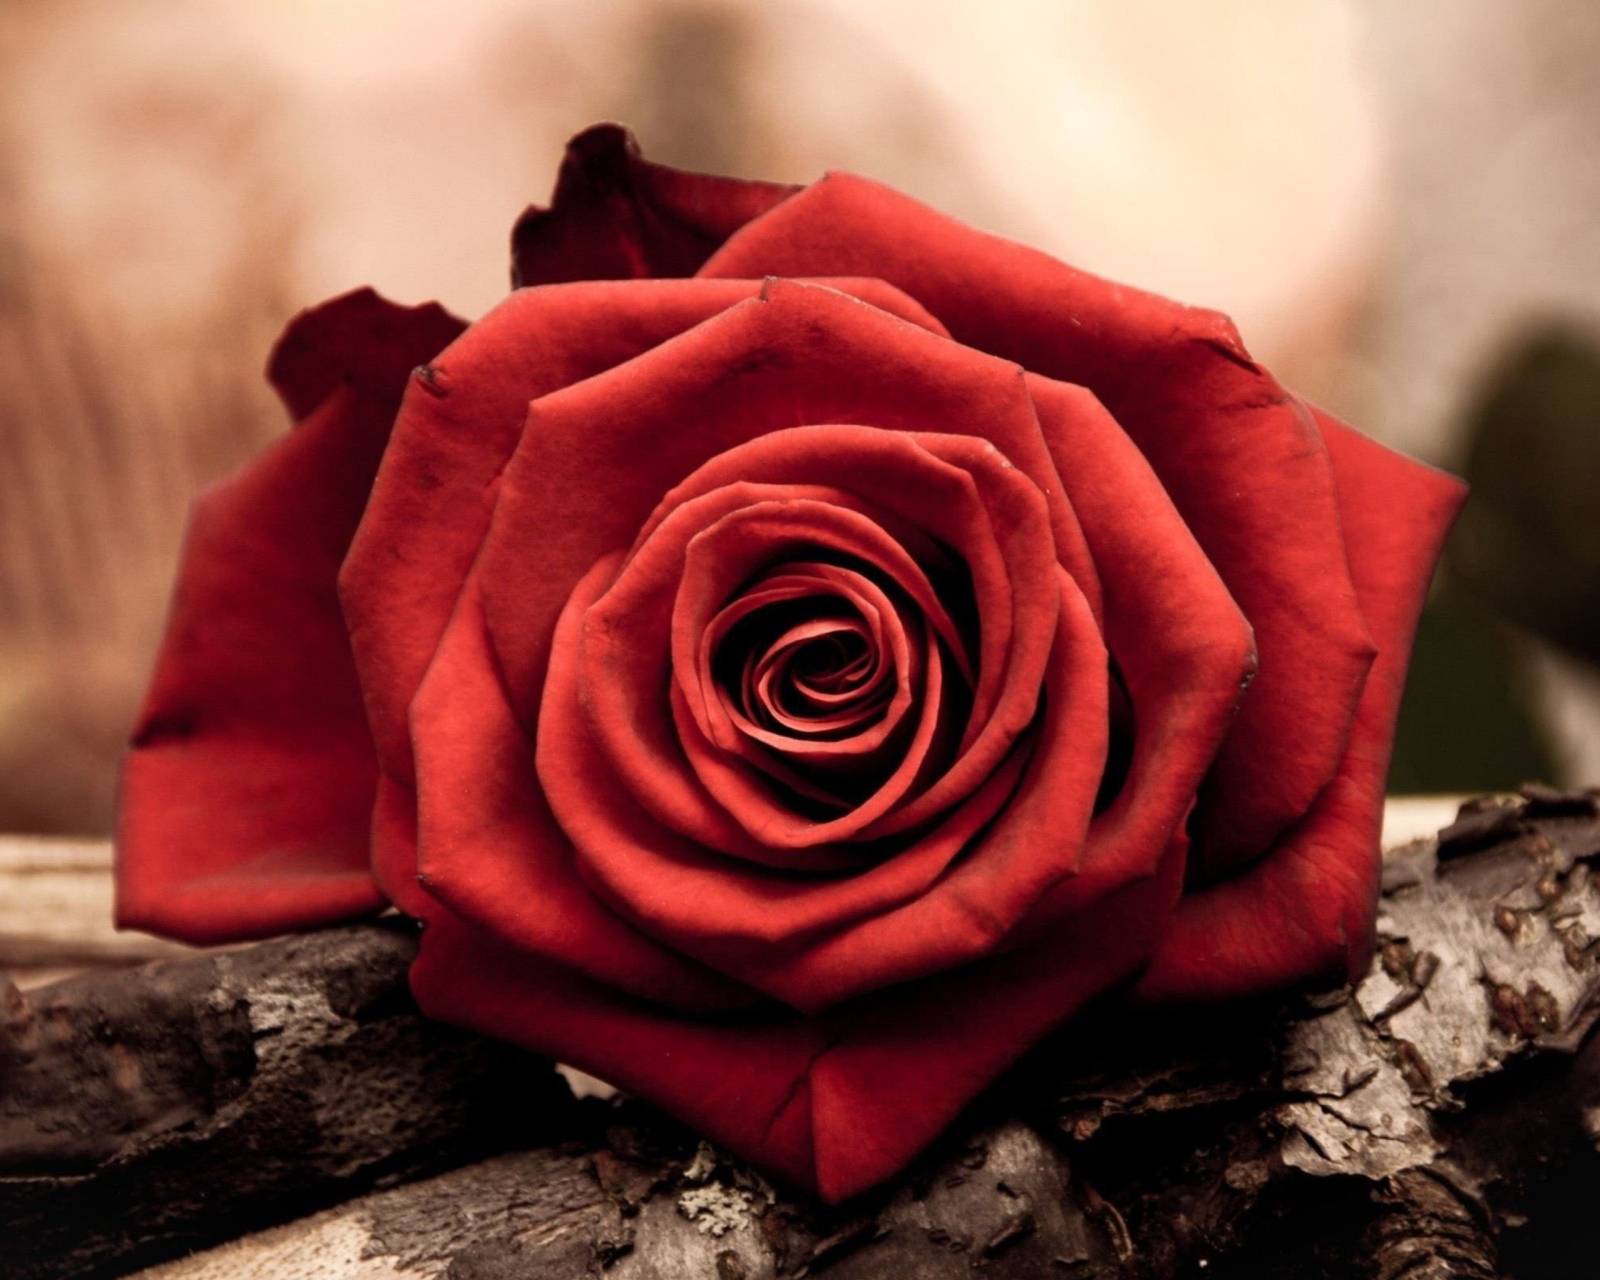 Rose Symbol Of Love wallpaper 1600x1280